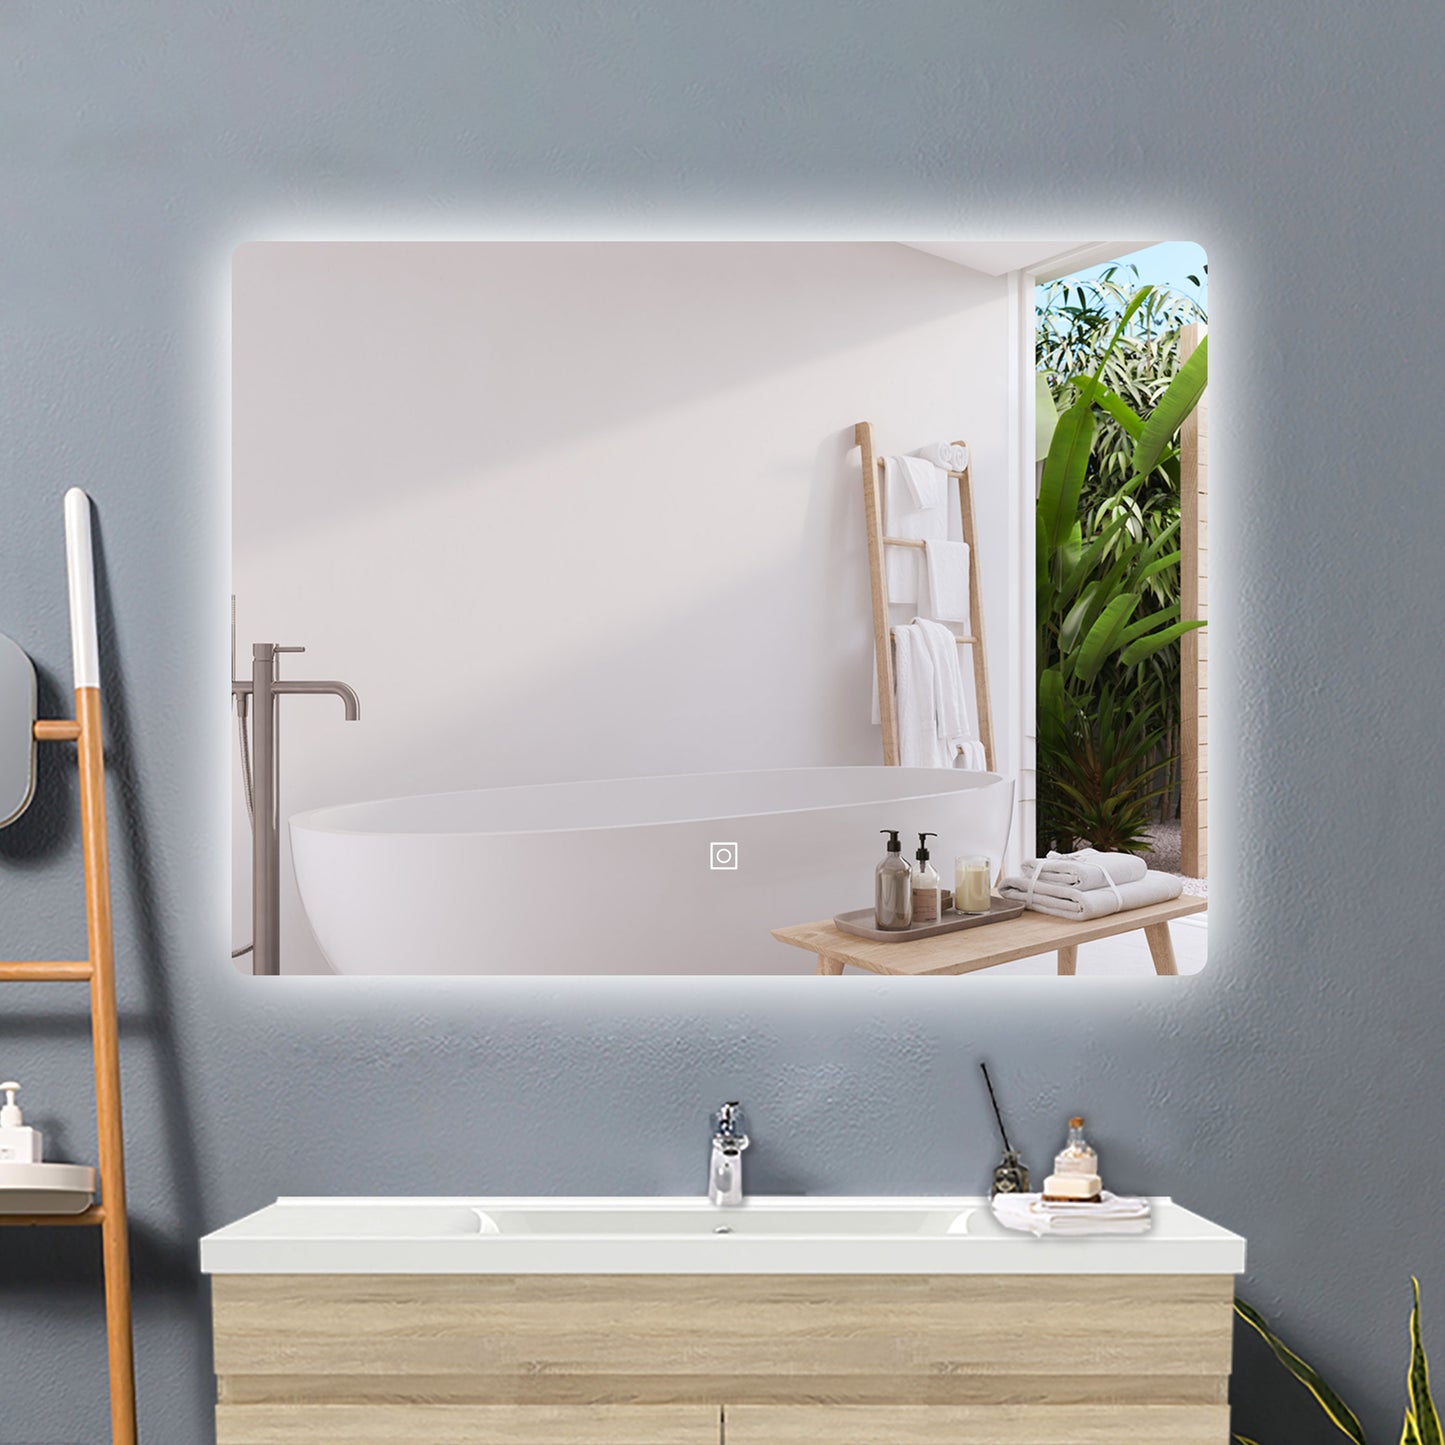 Badspiegel Spiegel mit LED Beleuchtung dimmbar 100x70cm horizontal/vertikal, Touch oder Wandschalter